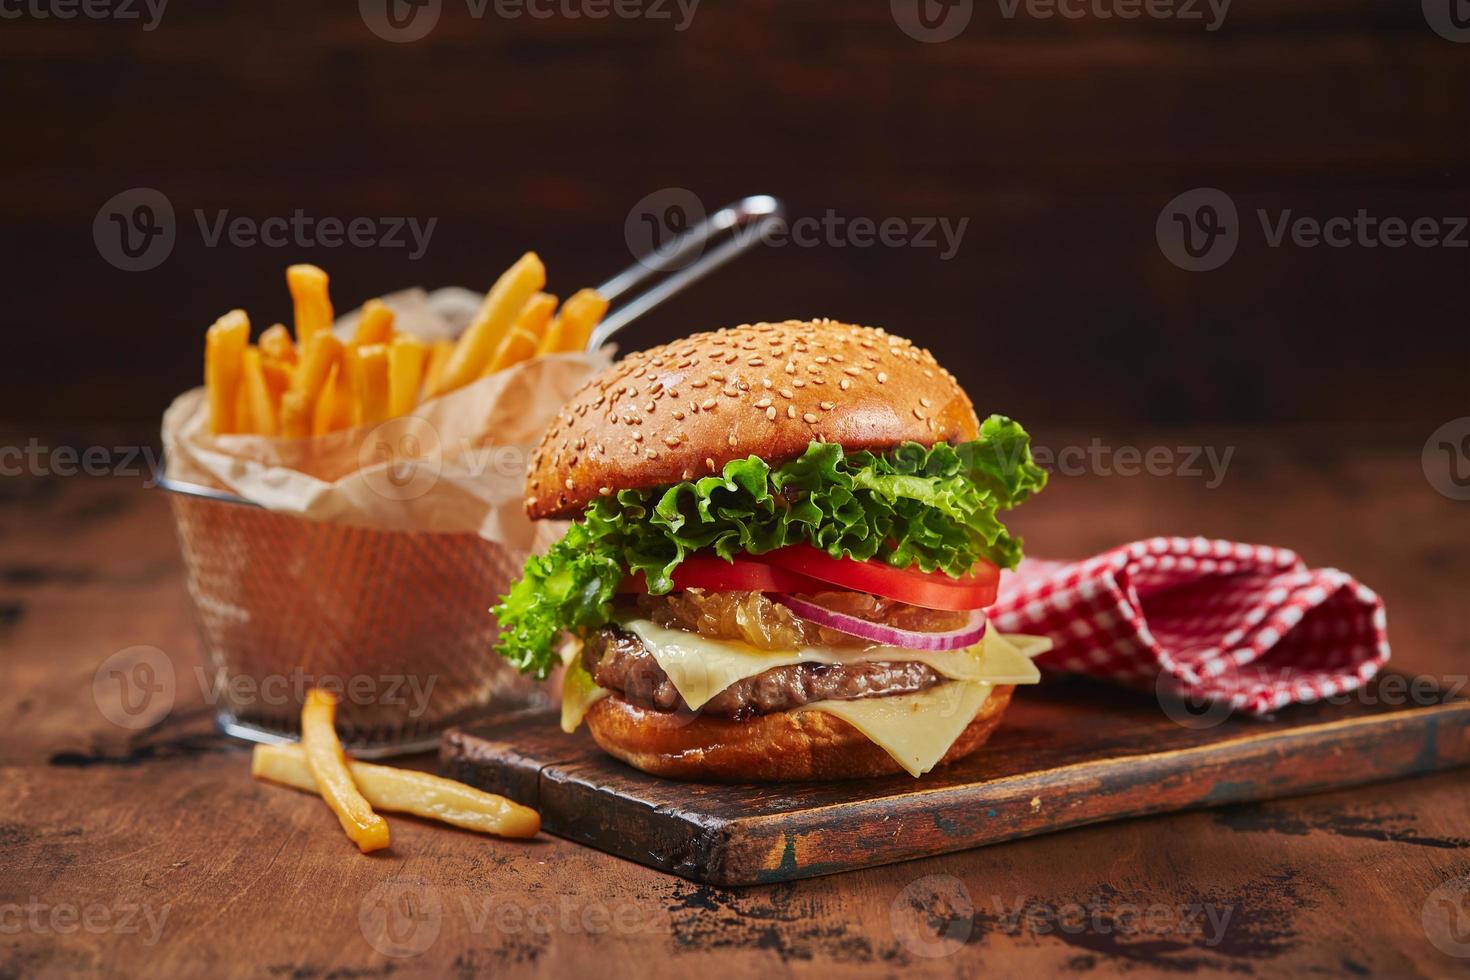 hausgemachter Burger mit Rindfleisch, Käse und Zwiebelmarmelade auf einem Holzbrett, Pommes in einem Metallkorb. fast-food-konzept, amerikanisches essen foto